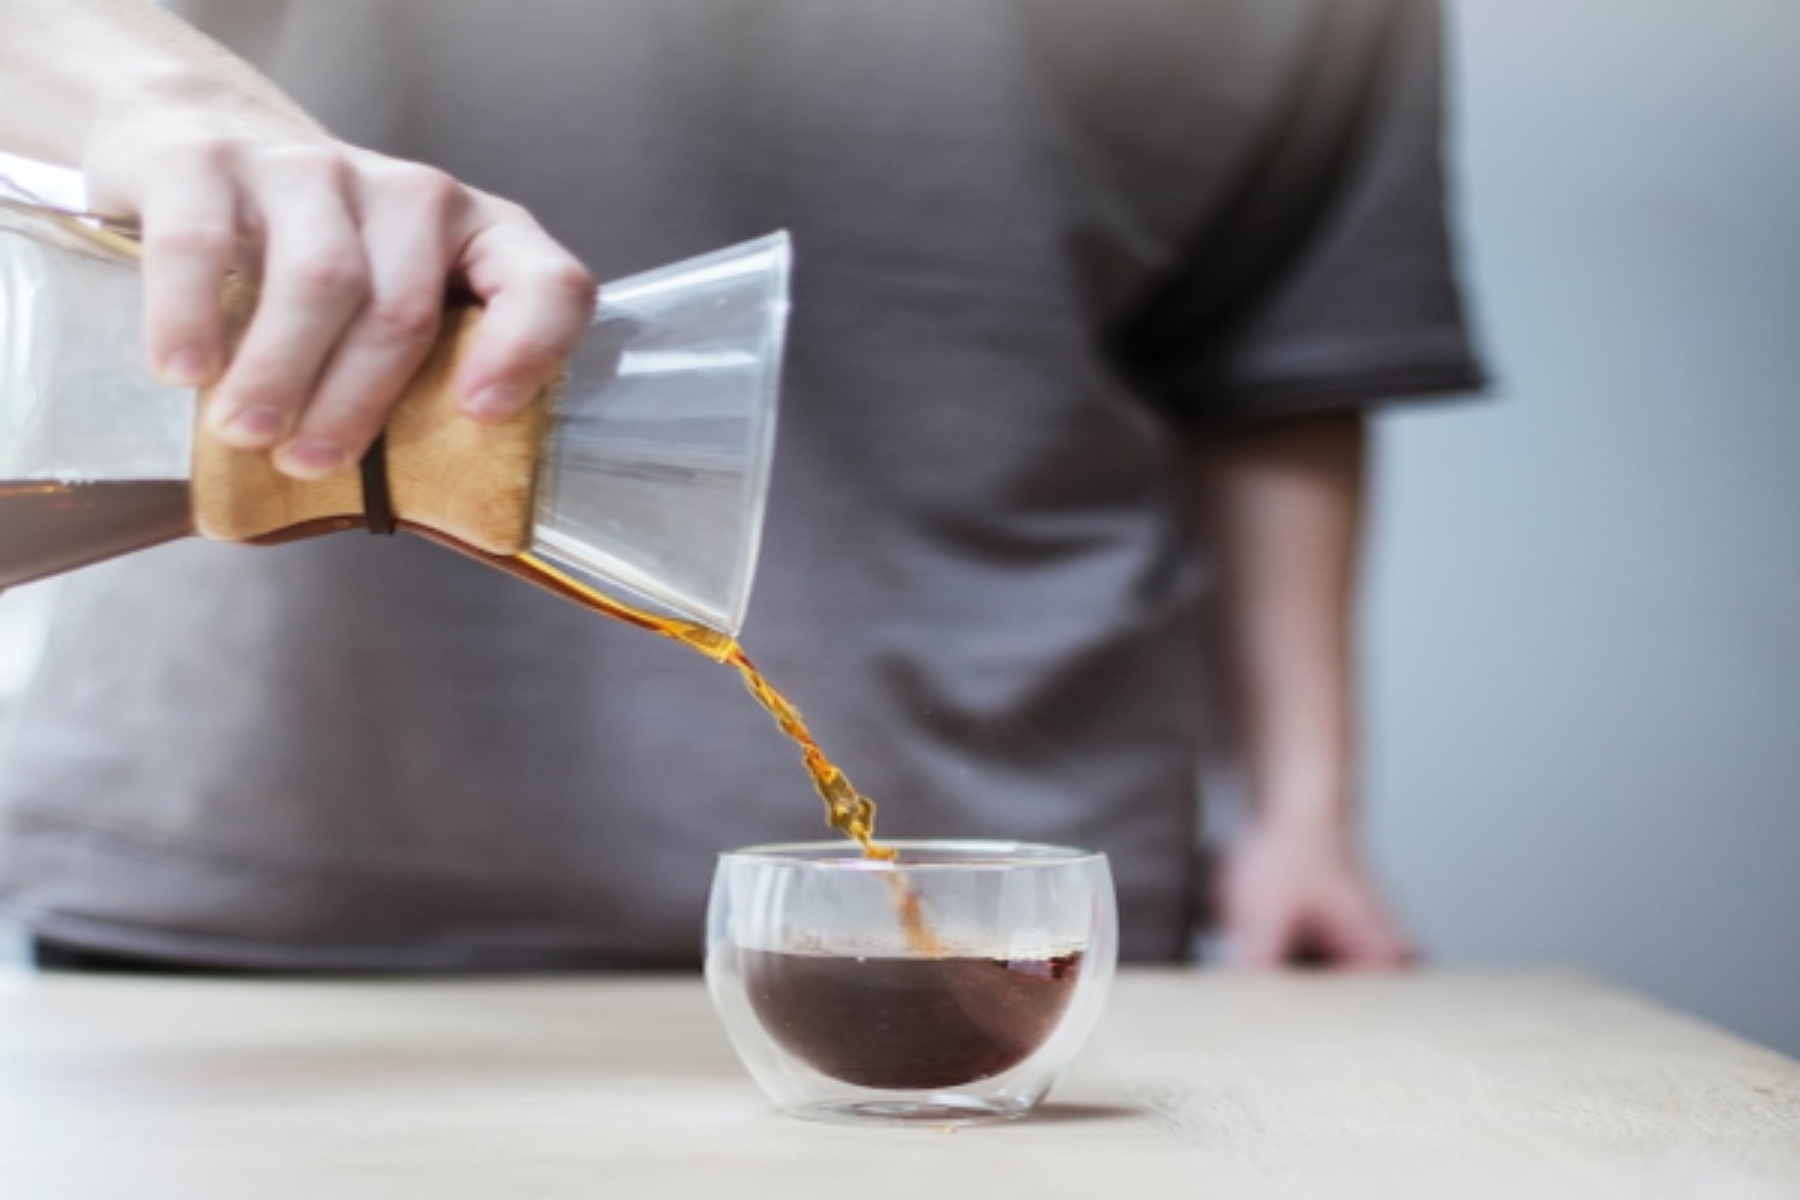 Καφές σκέτος: Ποιοι είναι οι μύθοι και ποιες οι αλήθειες για τον σκέτο καφέ;